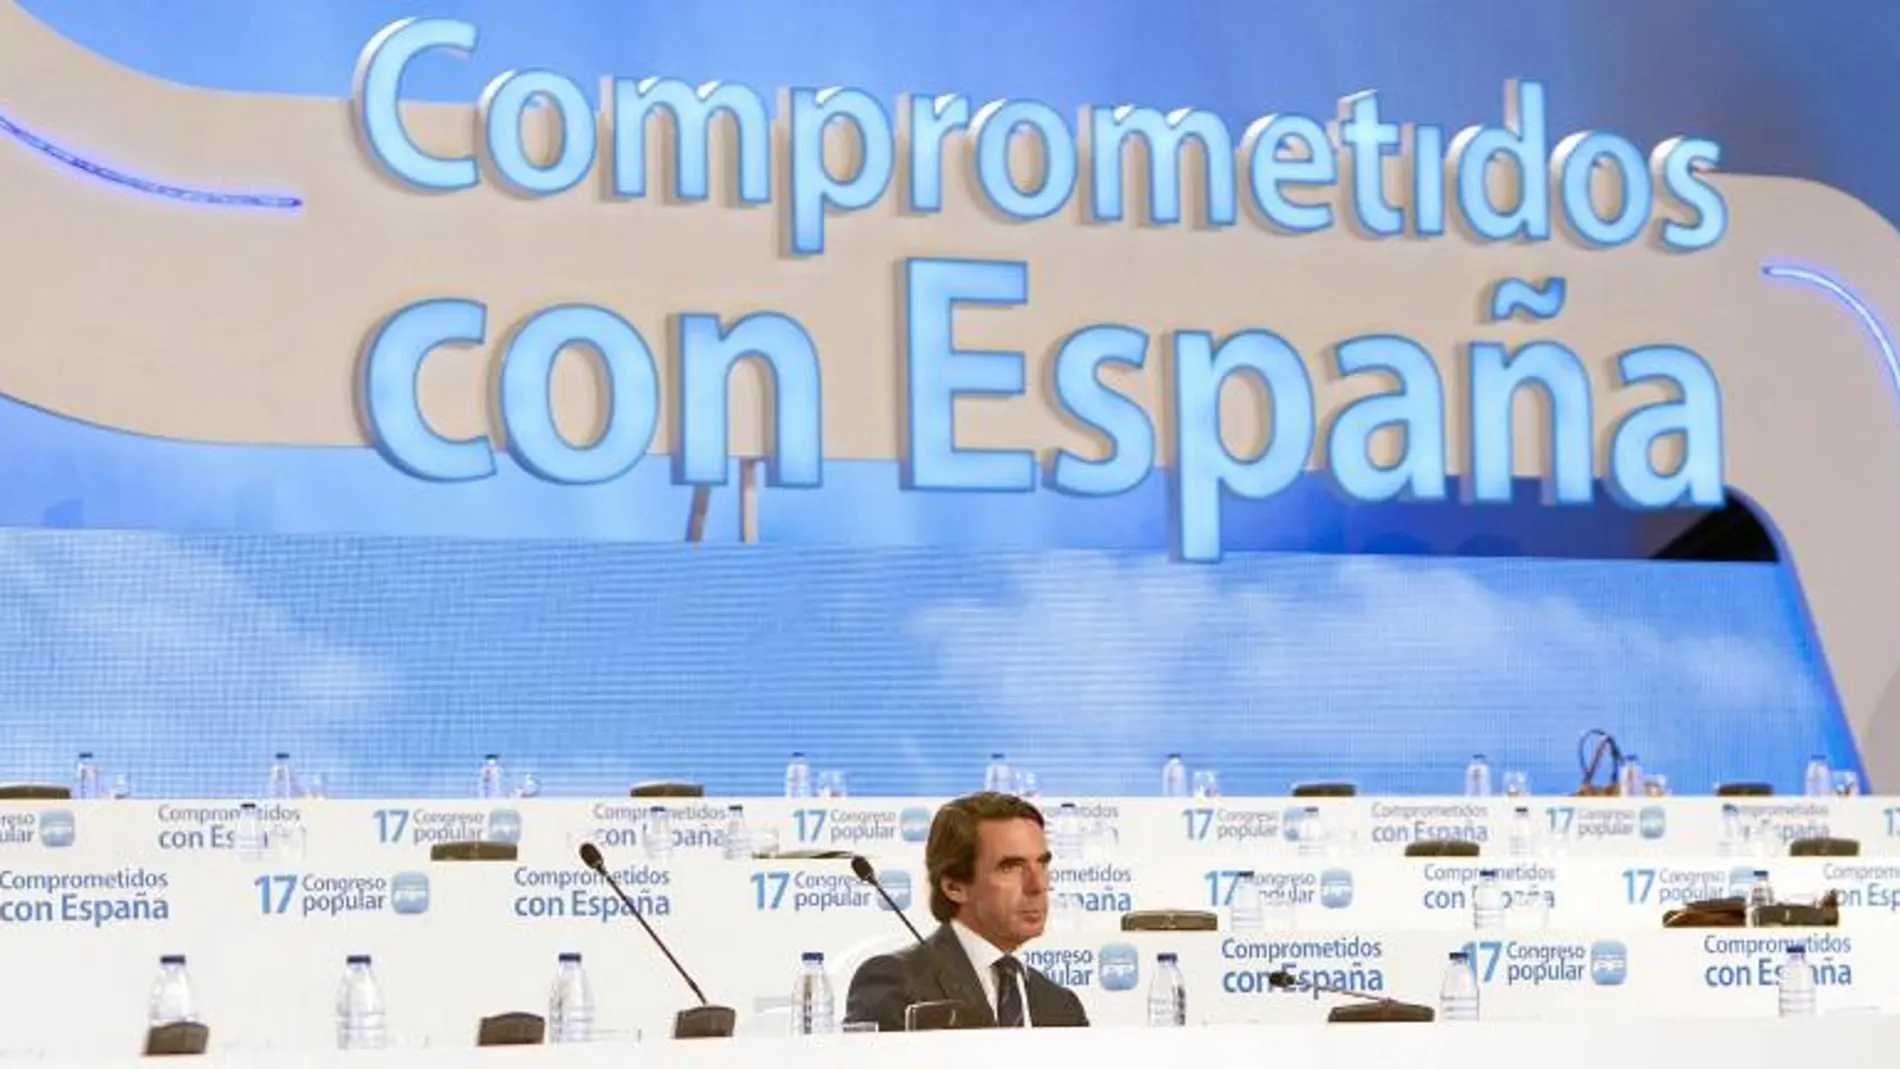 El ex presidente de honor en un momento del anterior congreso del PP celebrado en 2012 donde intervino junto a Rajoy